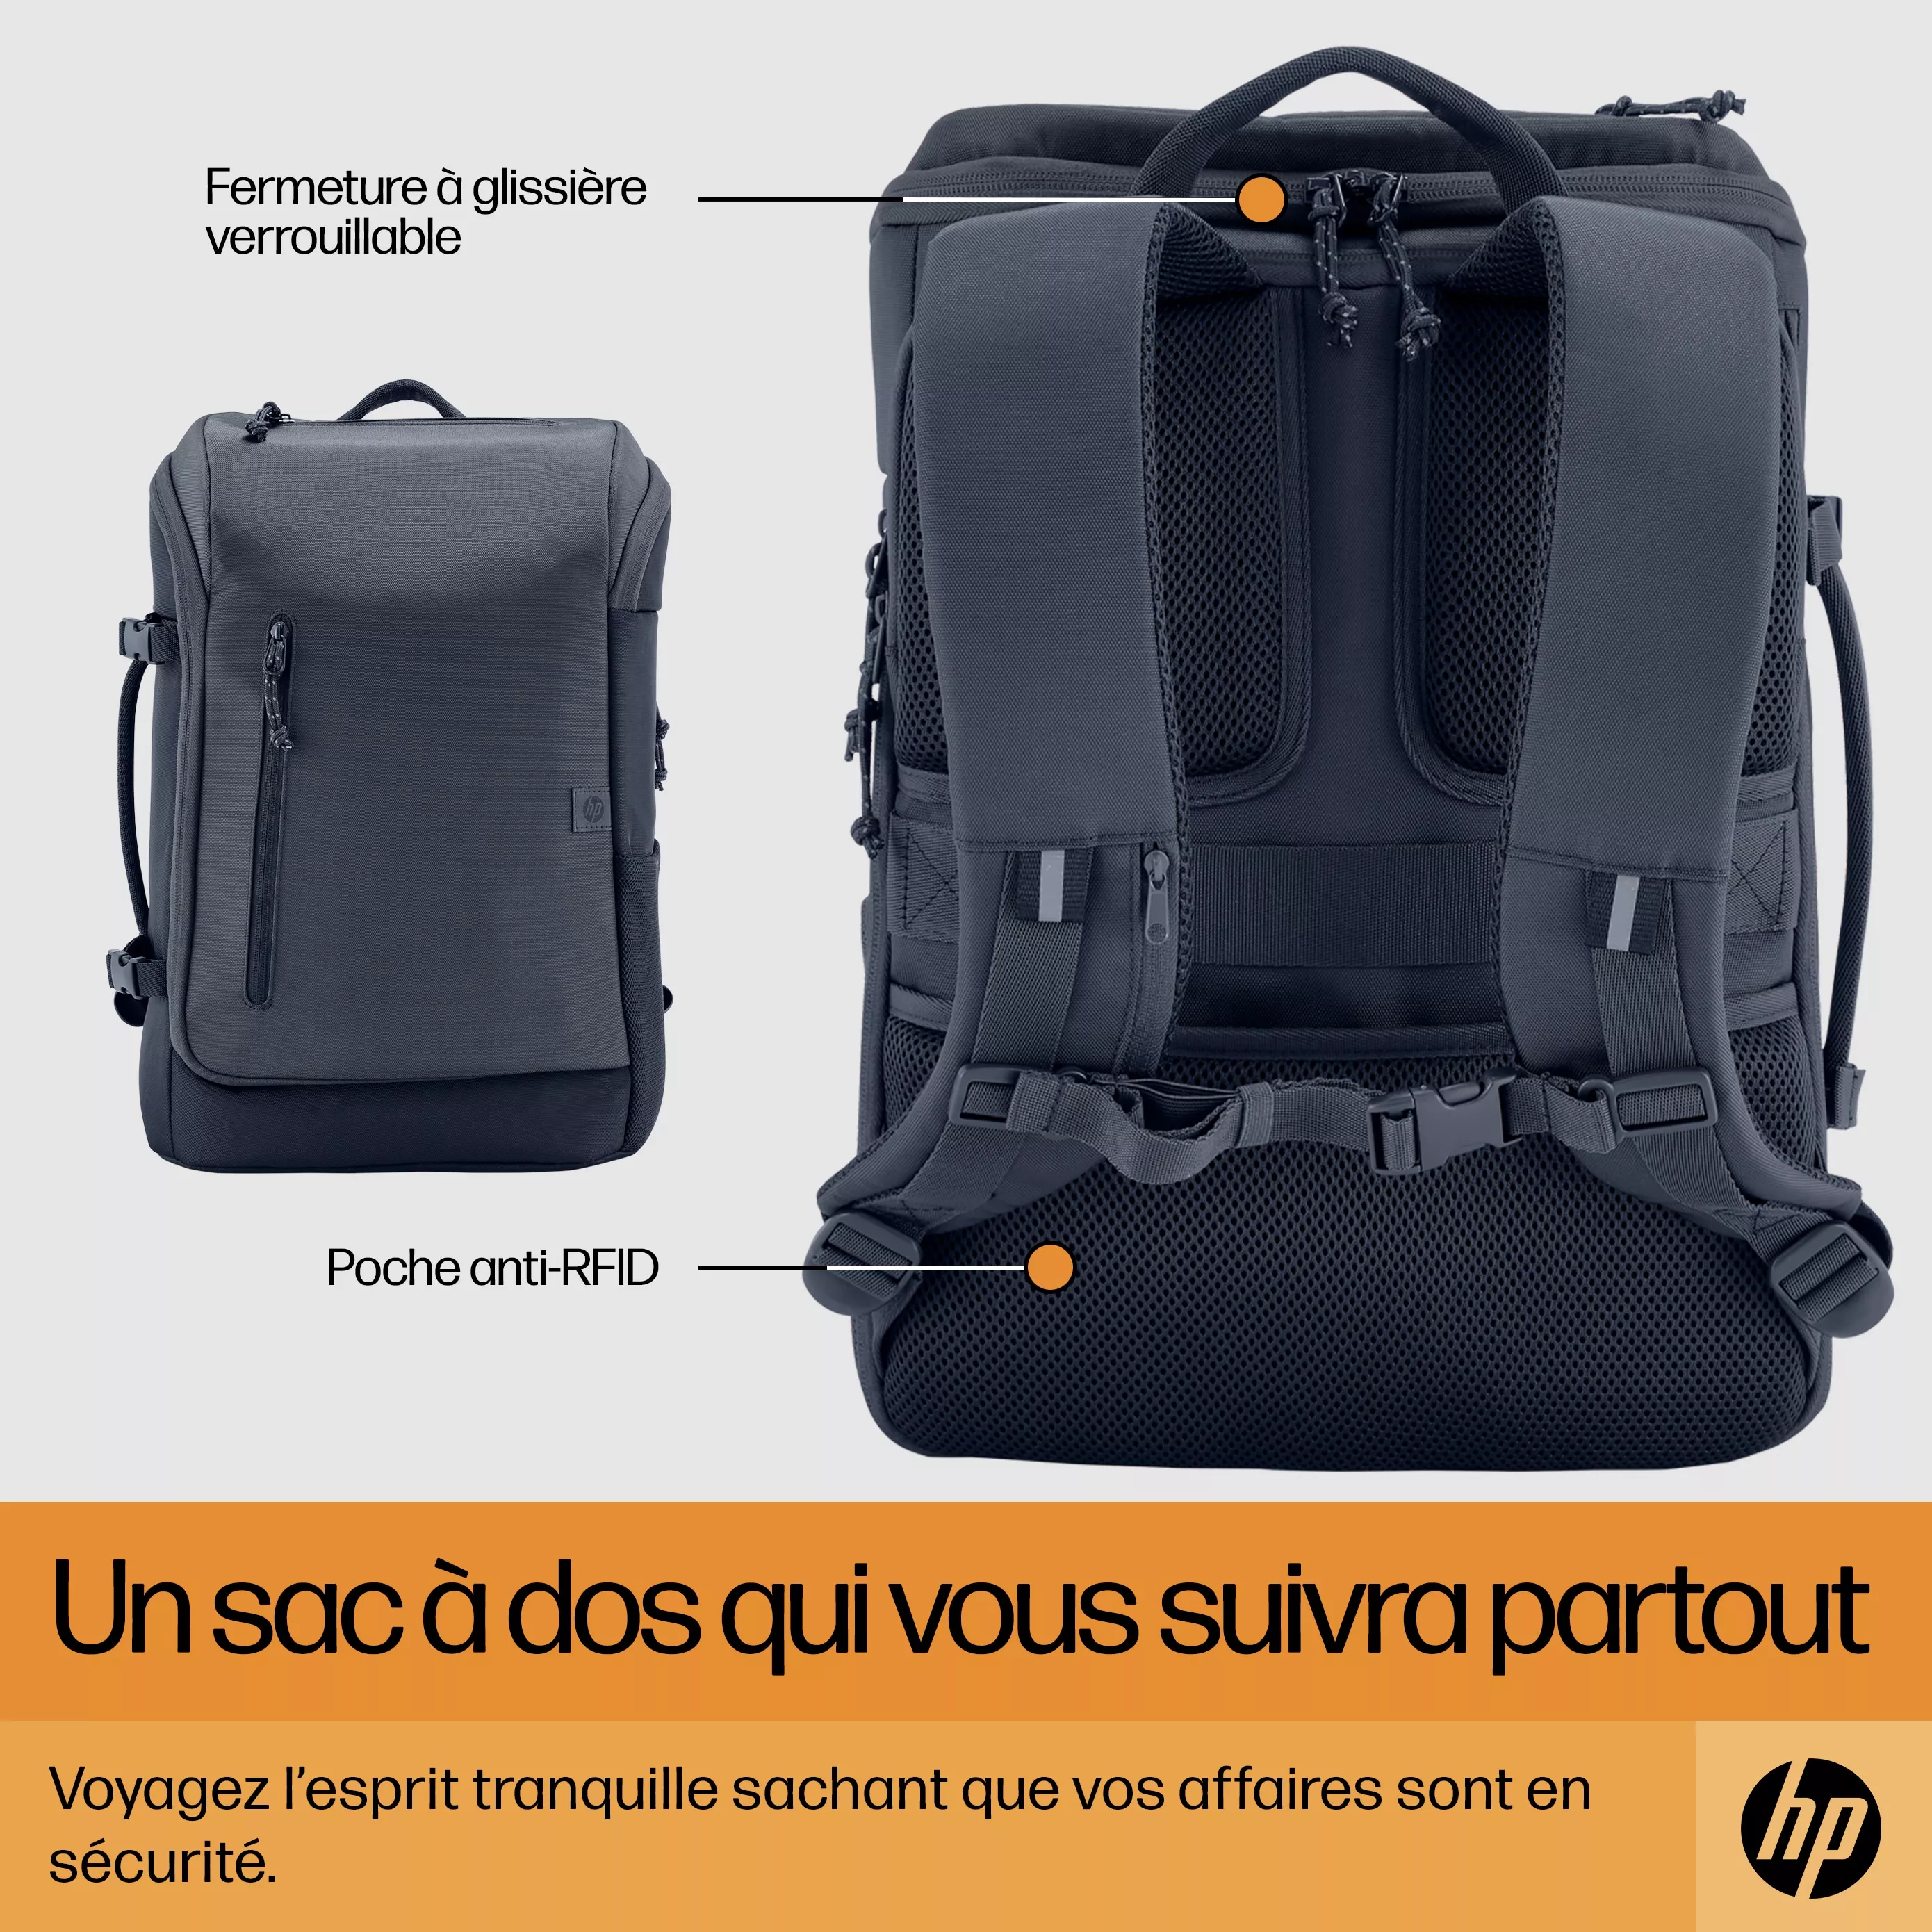 Vente HP Travel 25 Liter 15.6p Iron Grey Laptop HP au meilleur prix - visuel 8